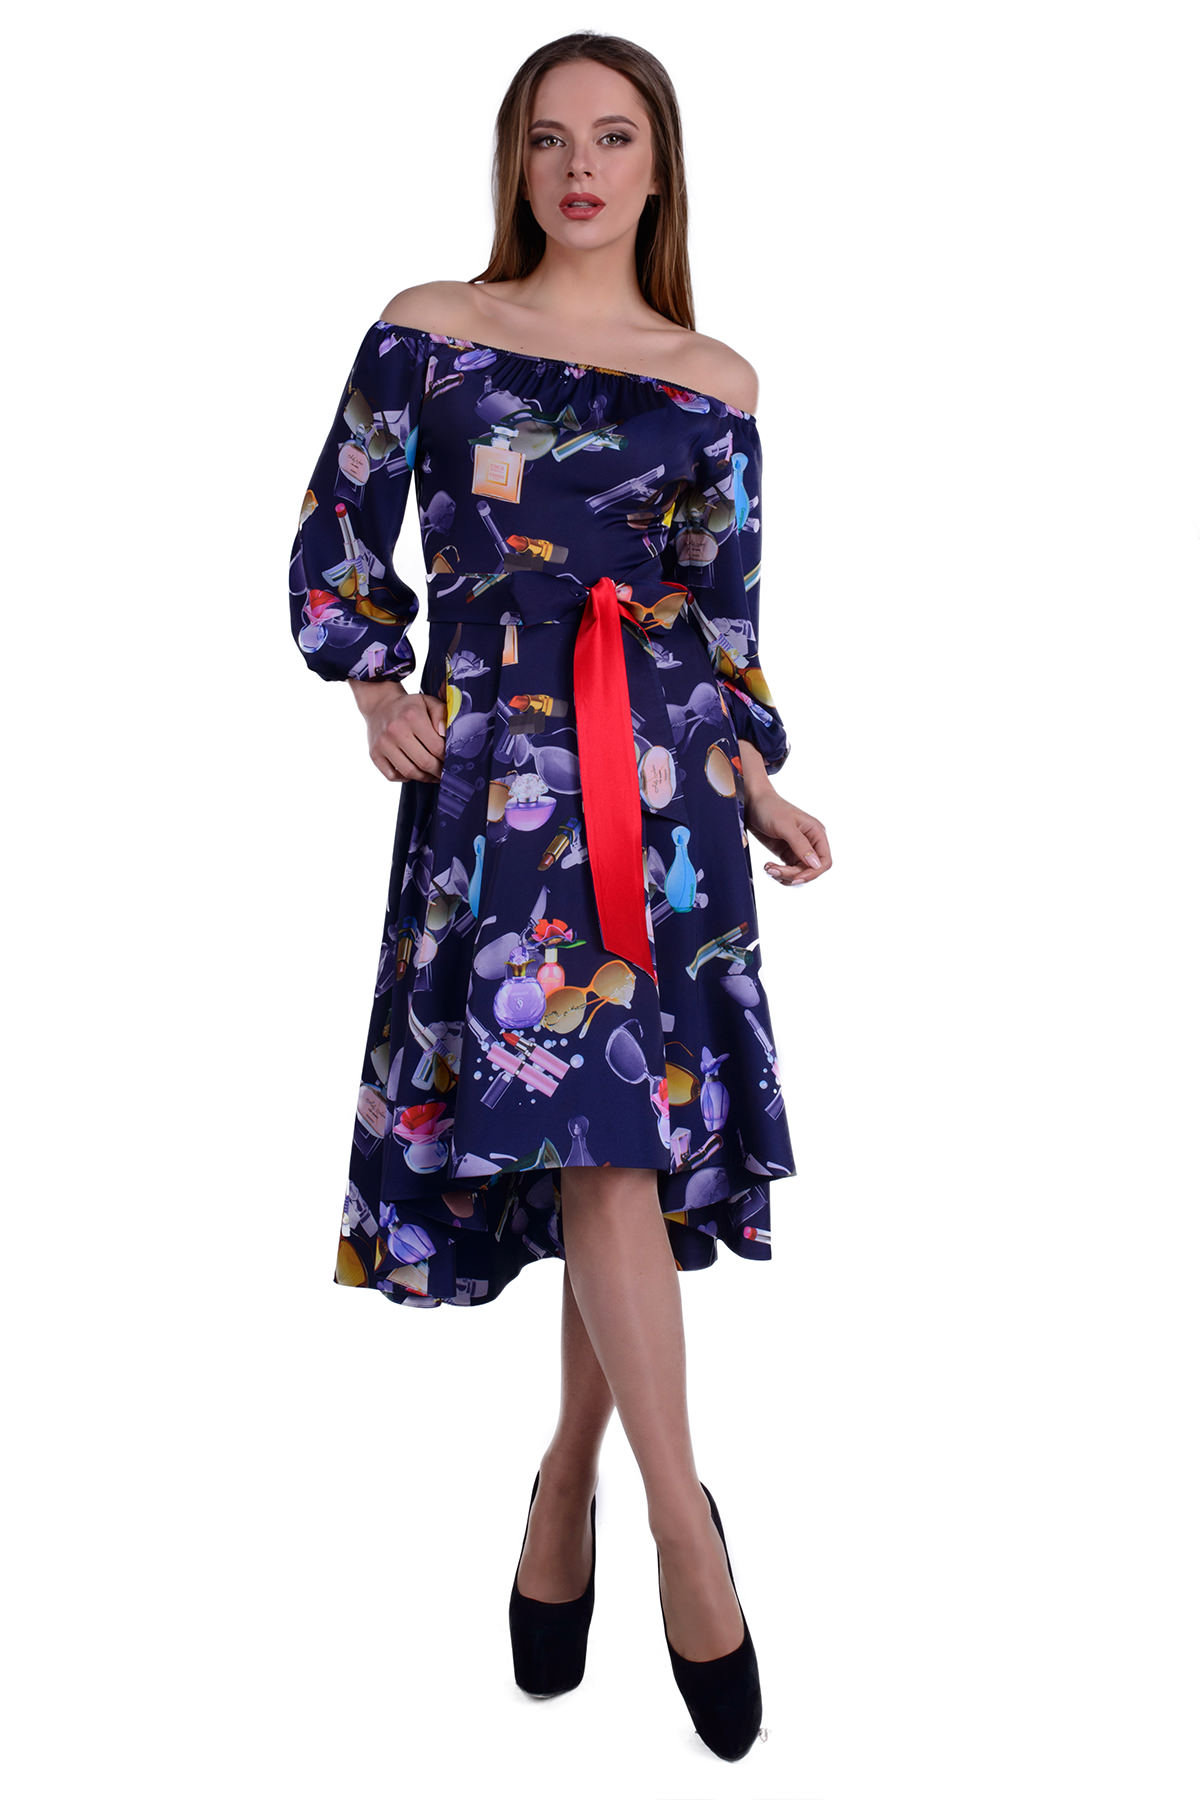 Купить оптом трикотажные платья в Украине Платье Мэрлин